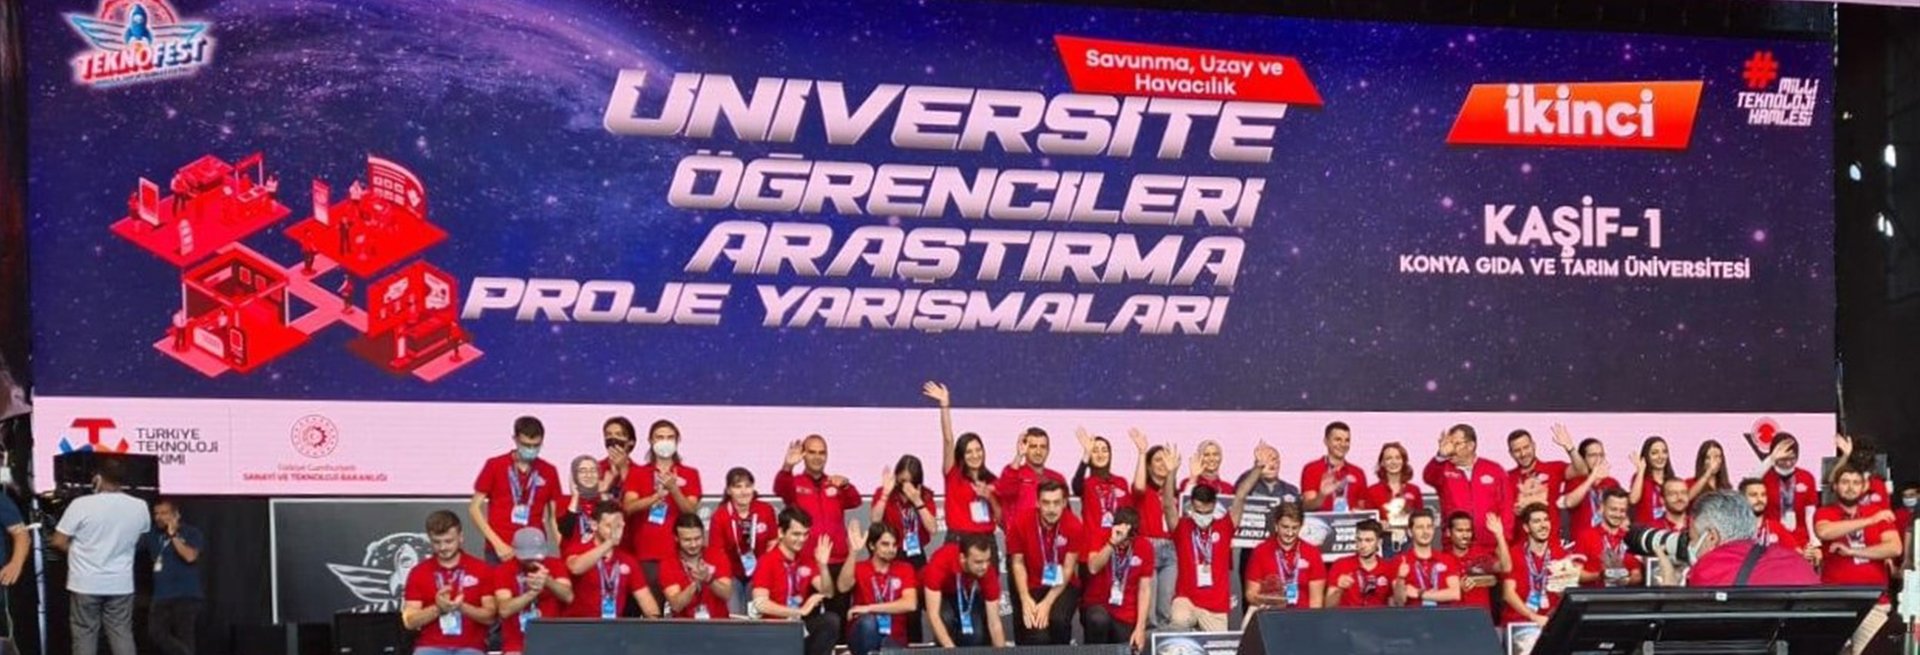 Öğrencilerimiz TEKNOFEST 2021 Kapsamında Düzenlenen 2242 TÜBİTAK Üniversite Öğrencileri Araştırma Projeleri Yarışması Savunma, Uzay ve Havacılık Kategorisinde Finalinde Türkiye İkincisi Oldu